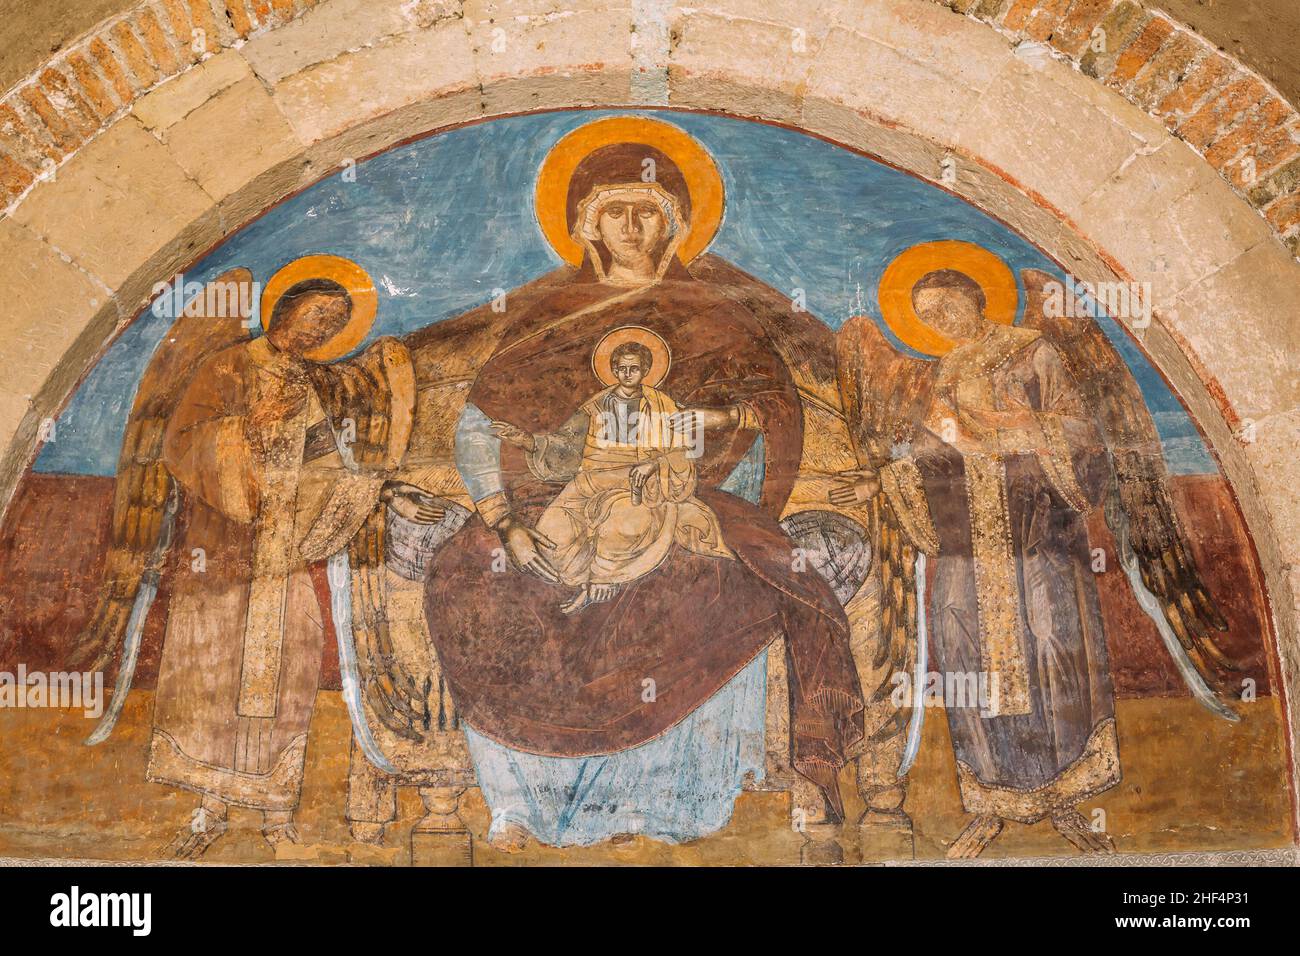 Mtskheta Georgia. Immagine di Theotokos con Gesù due Arcangeli su fresco alla Cattedrale di Svetitskhoveli Foto Stock